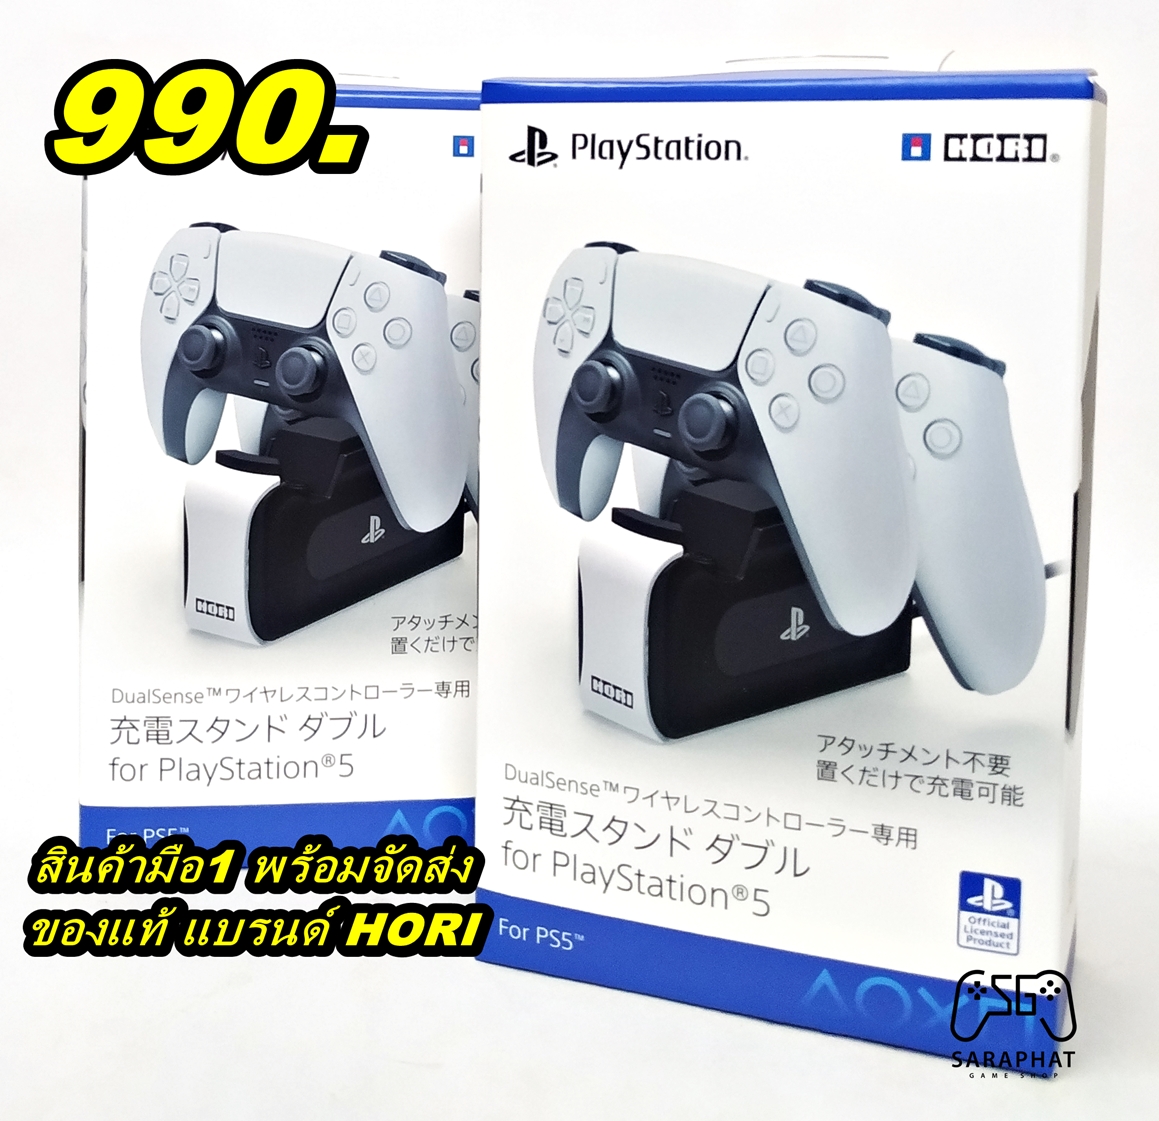 แท่นชาร์จจอย Dual Sense Dedicated Double Charging Stand for PlayStation5 แบรนด์ HORI พร้อมจัดส่ง